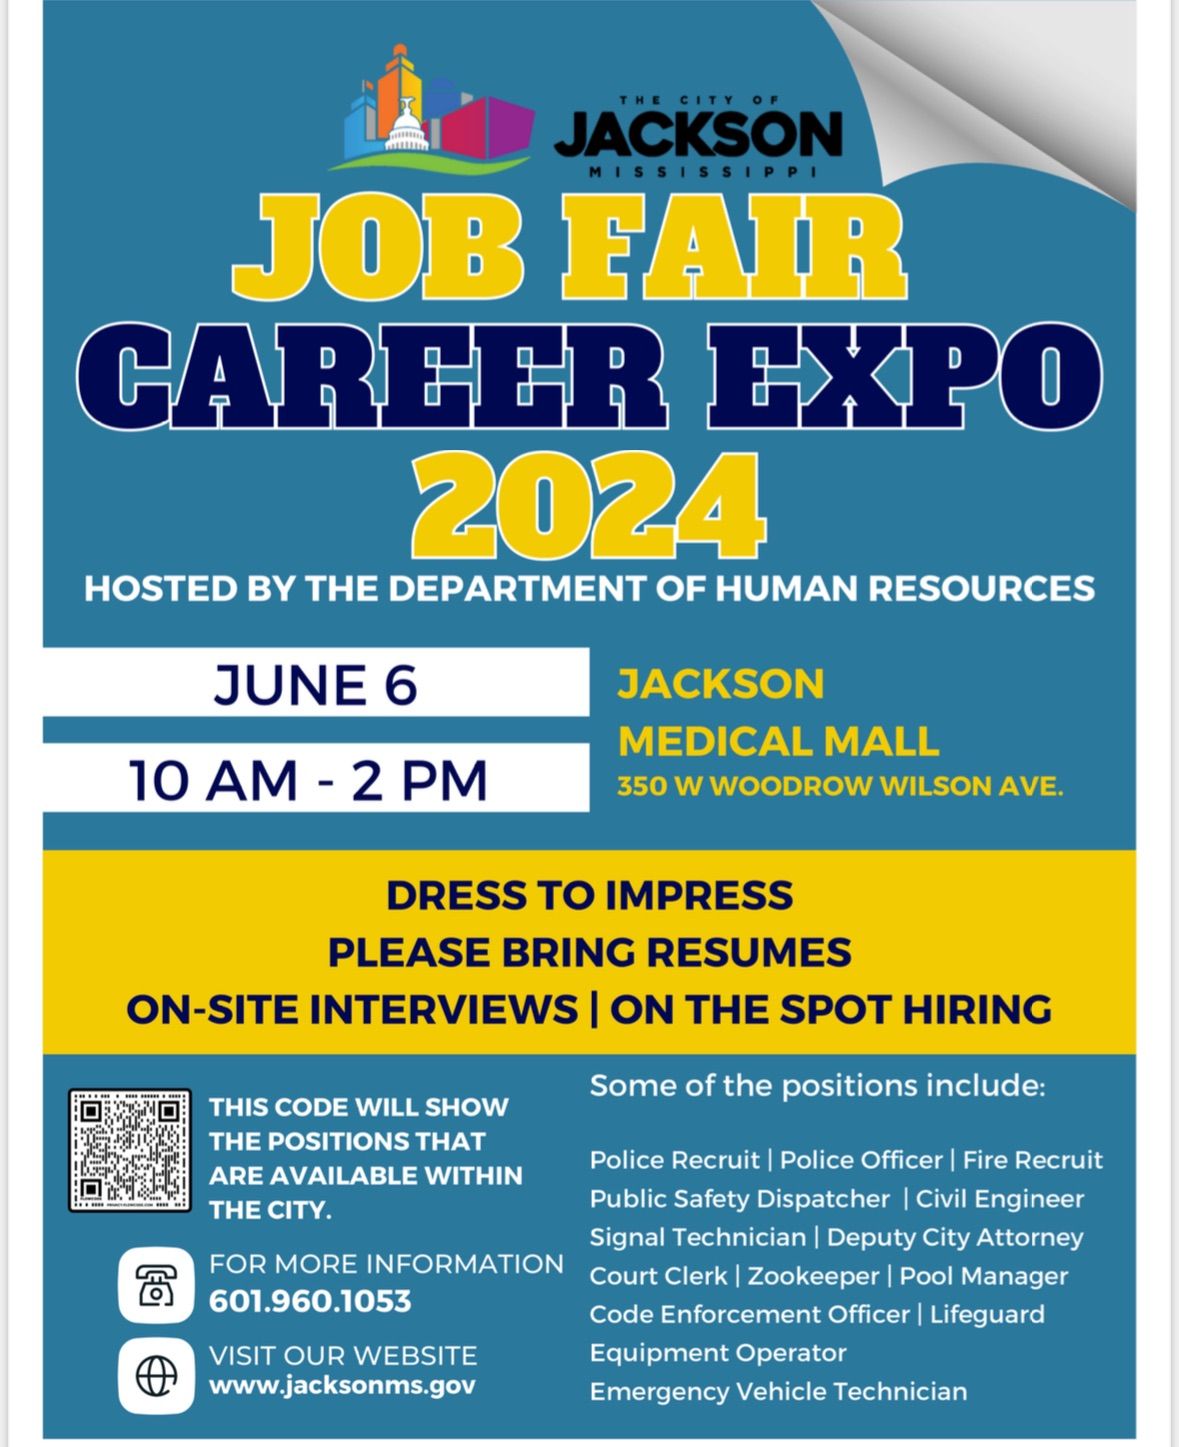 Job Fair & Career Expo